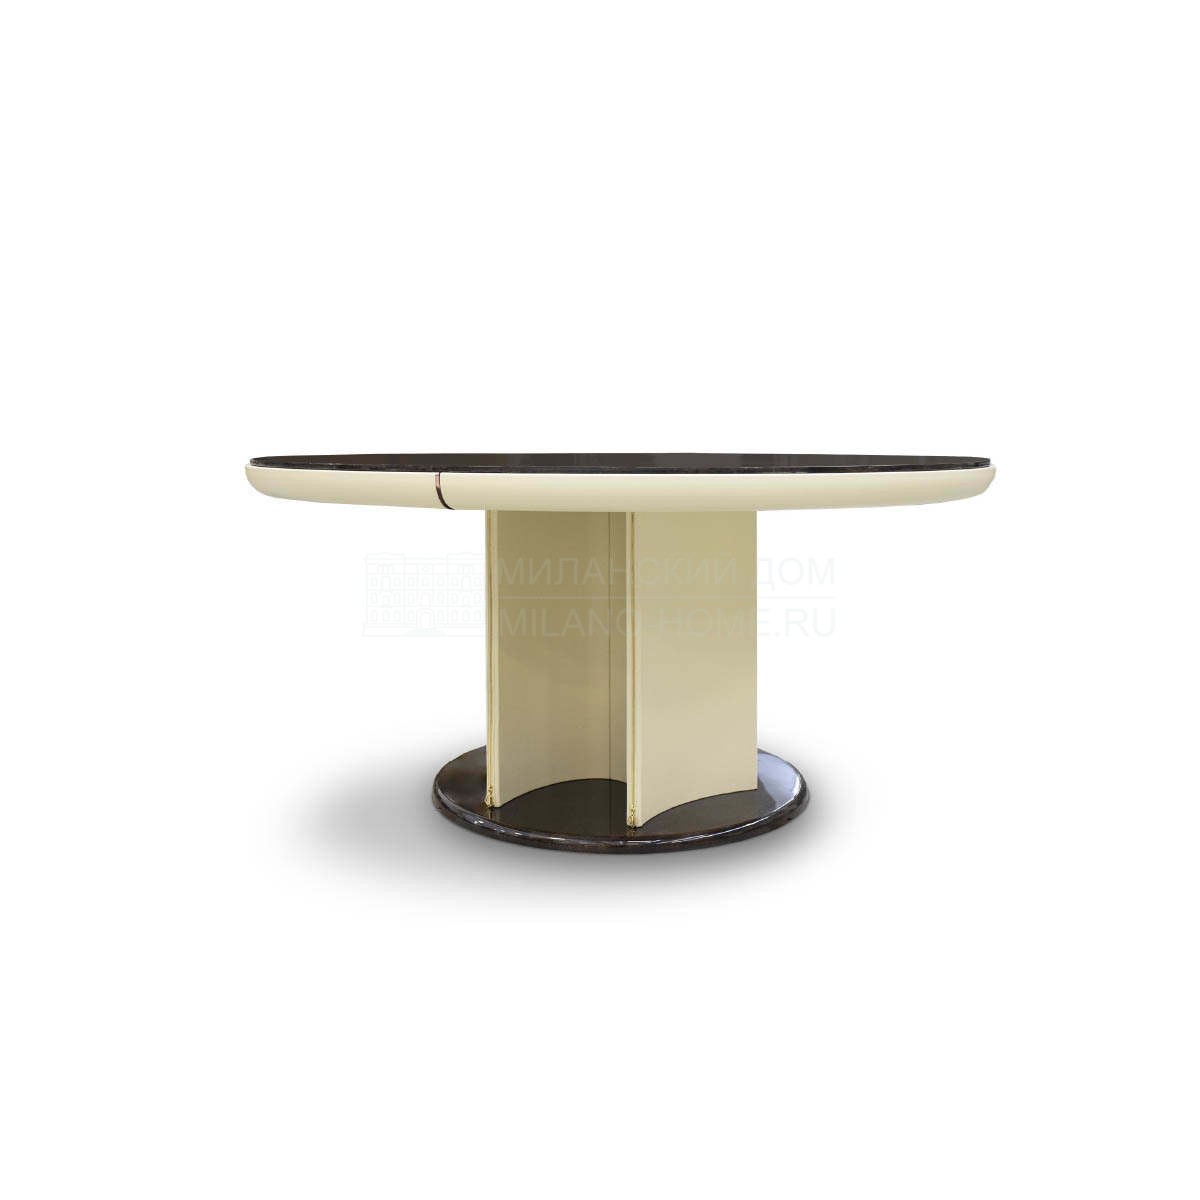 Круглый стол Noir round table из Италии фабрики TURRI